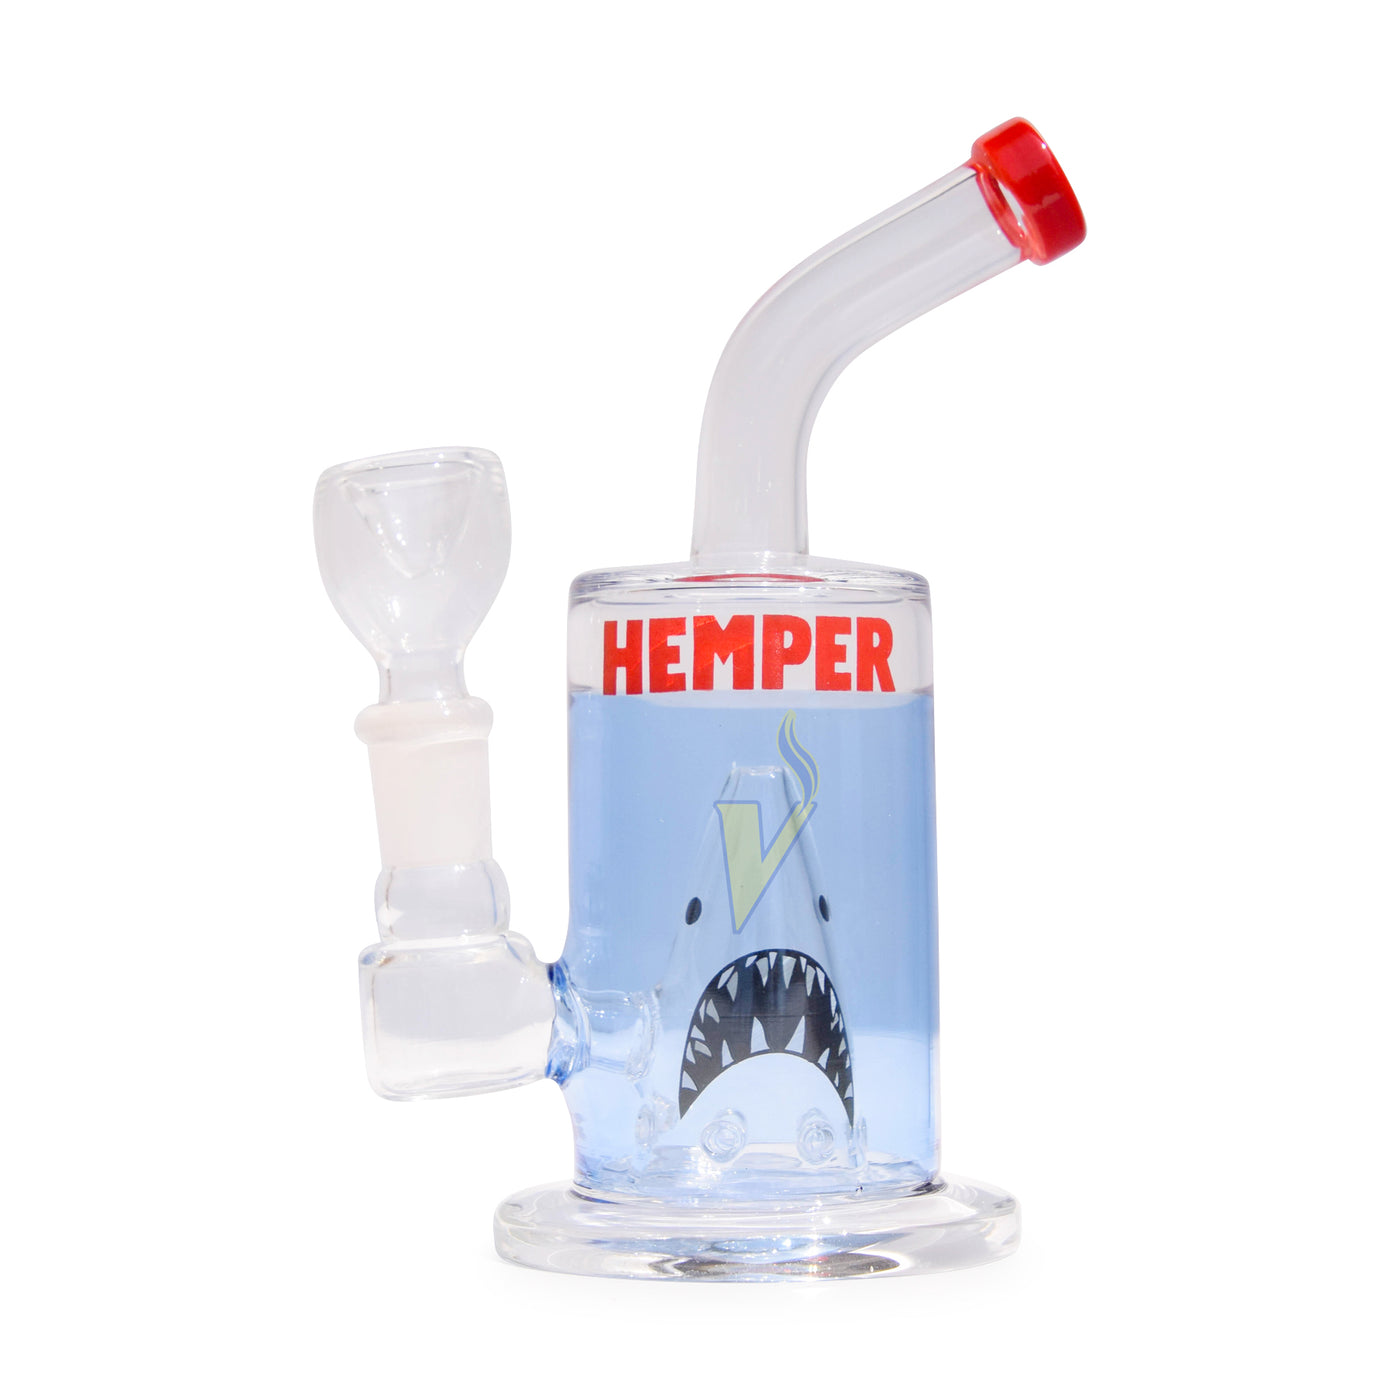 Hemper Glass Bongs